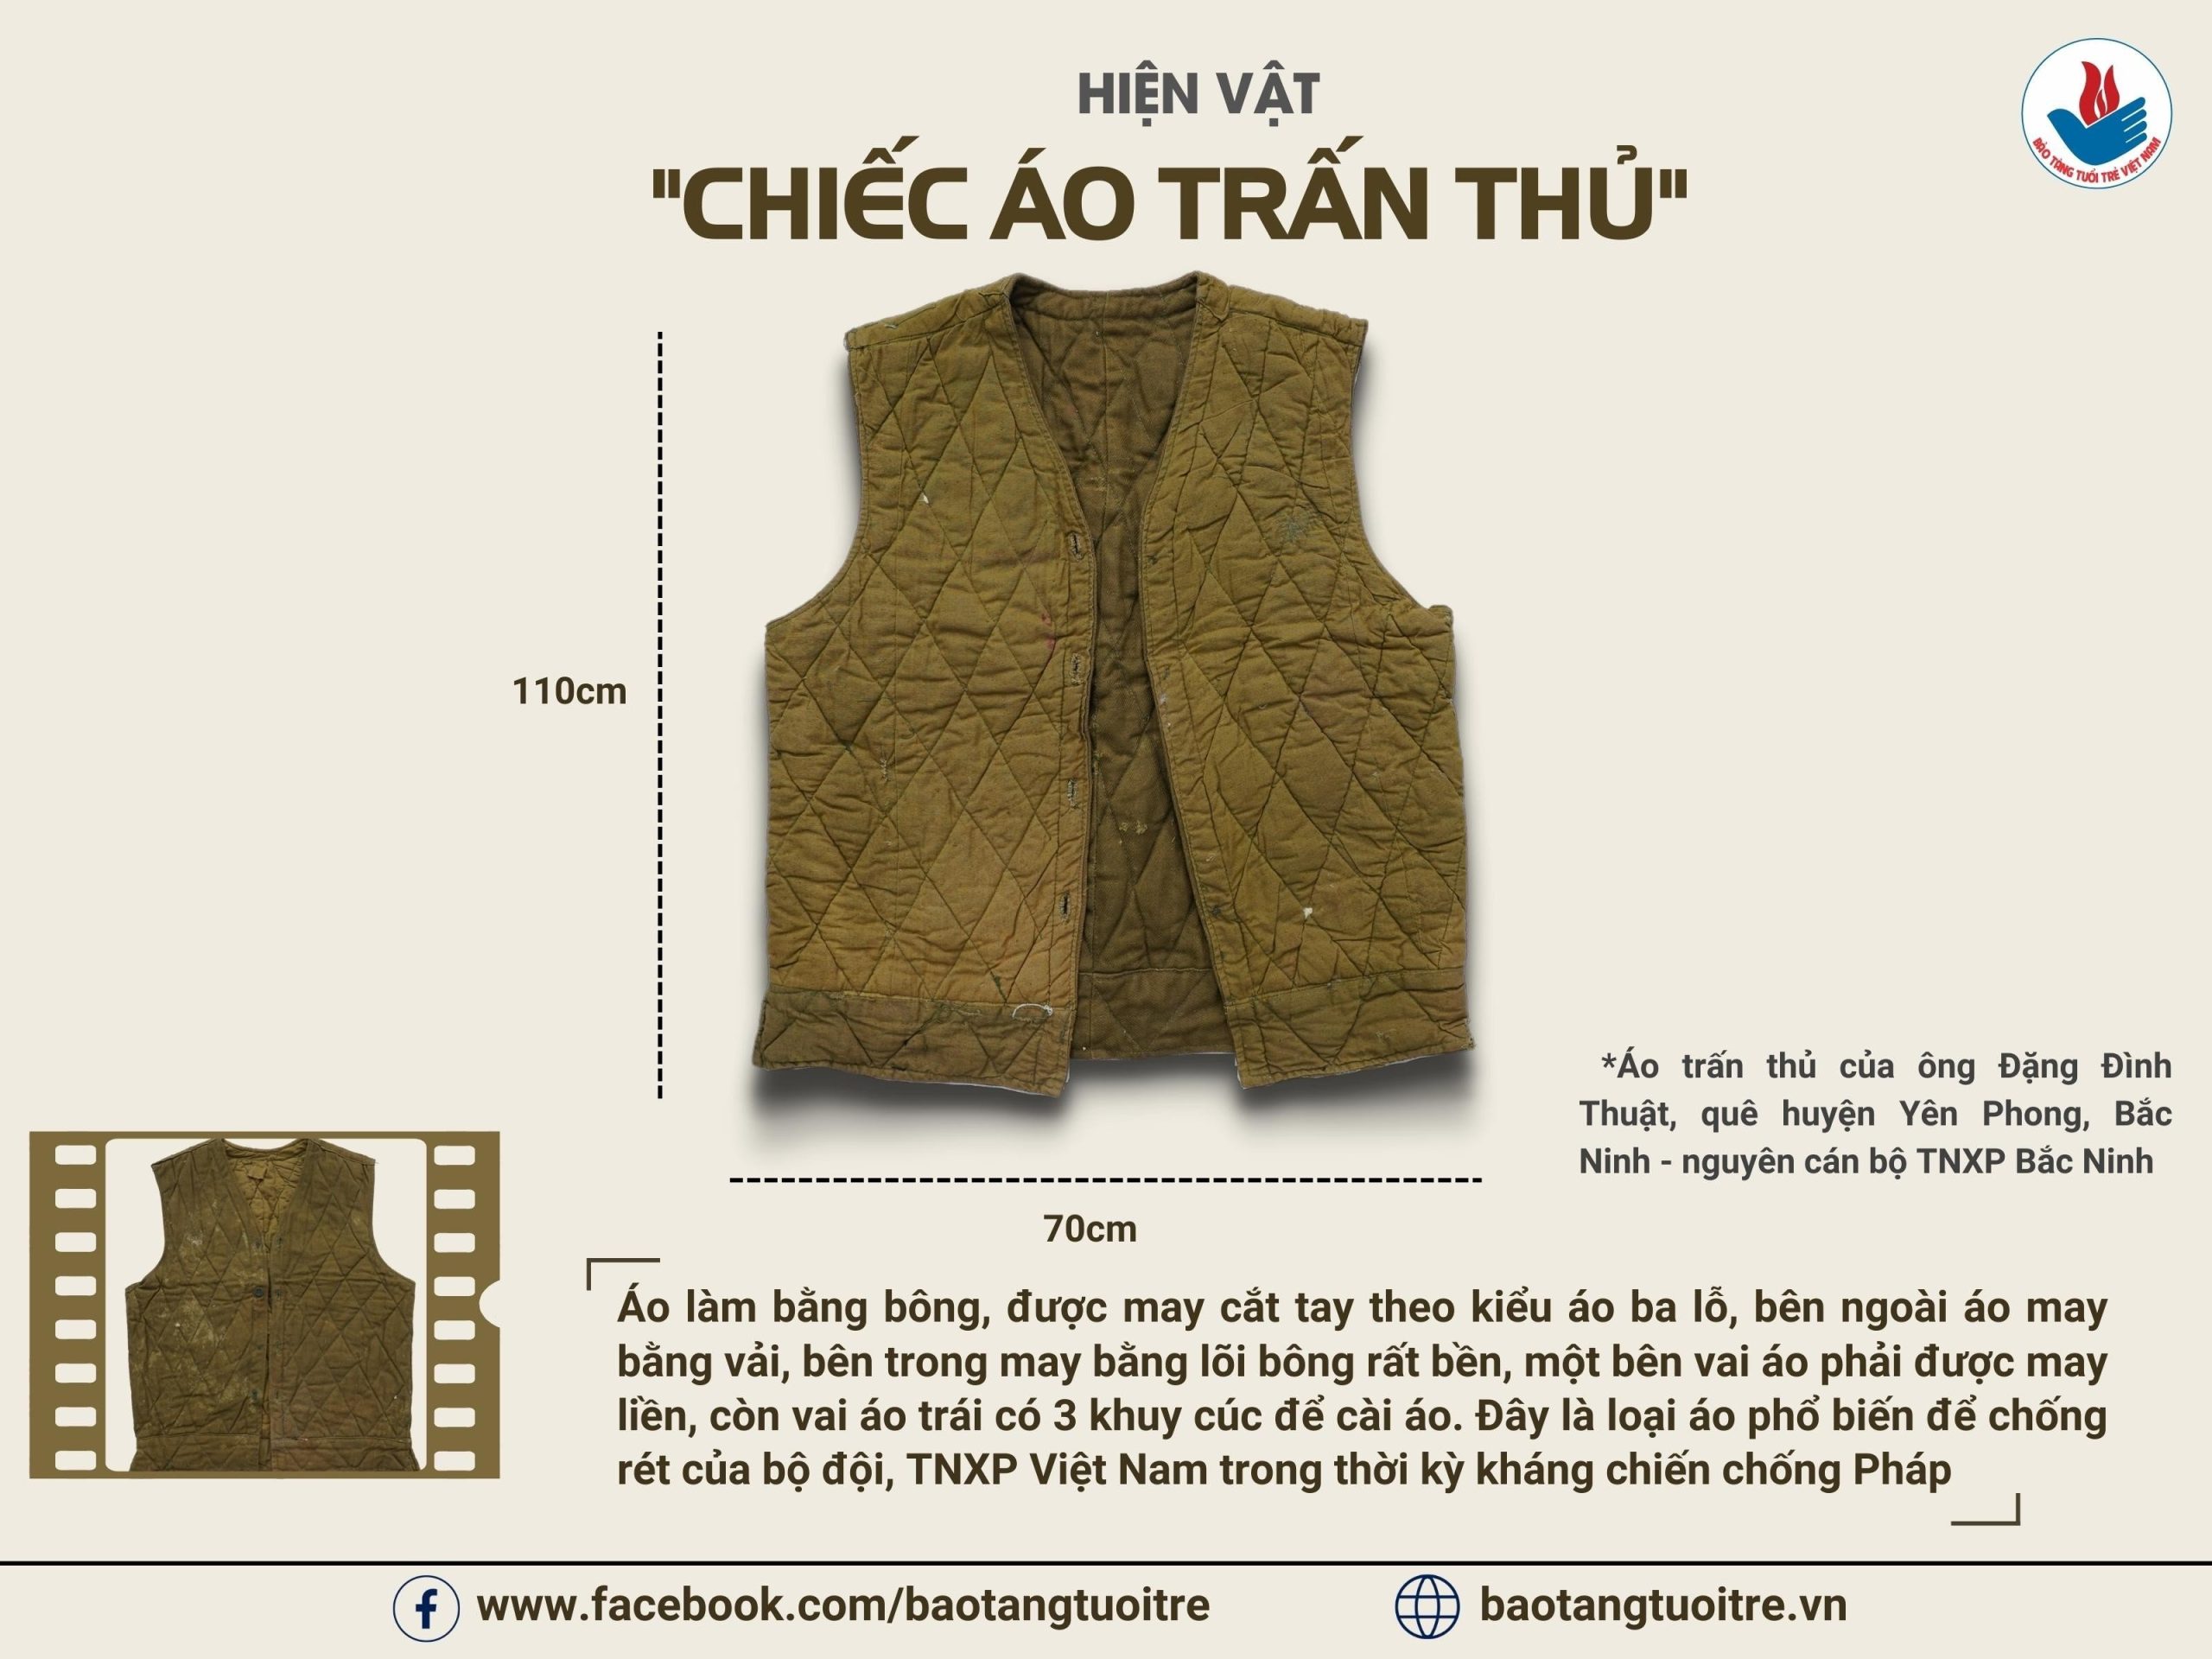 Hiện Vật “Chiếc Áo Trấn Thủ” Của Ông Đặng Đình Thuật – Bảo Tàng Tuổi Trẻ  Việt Nam